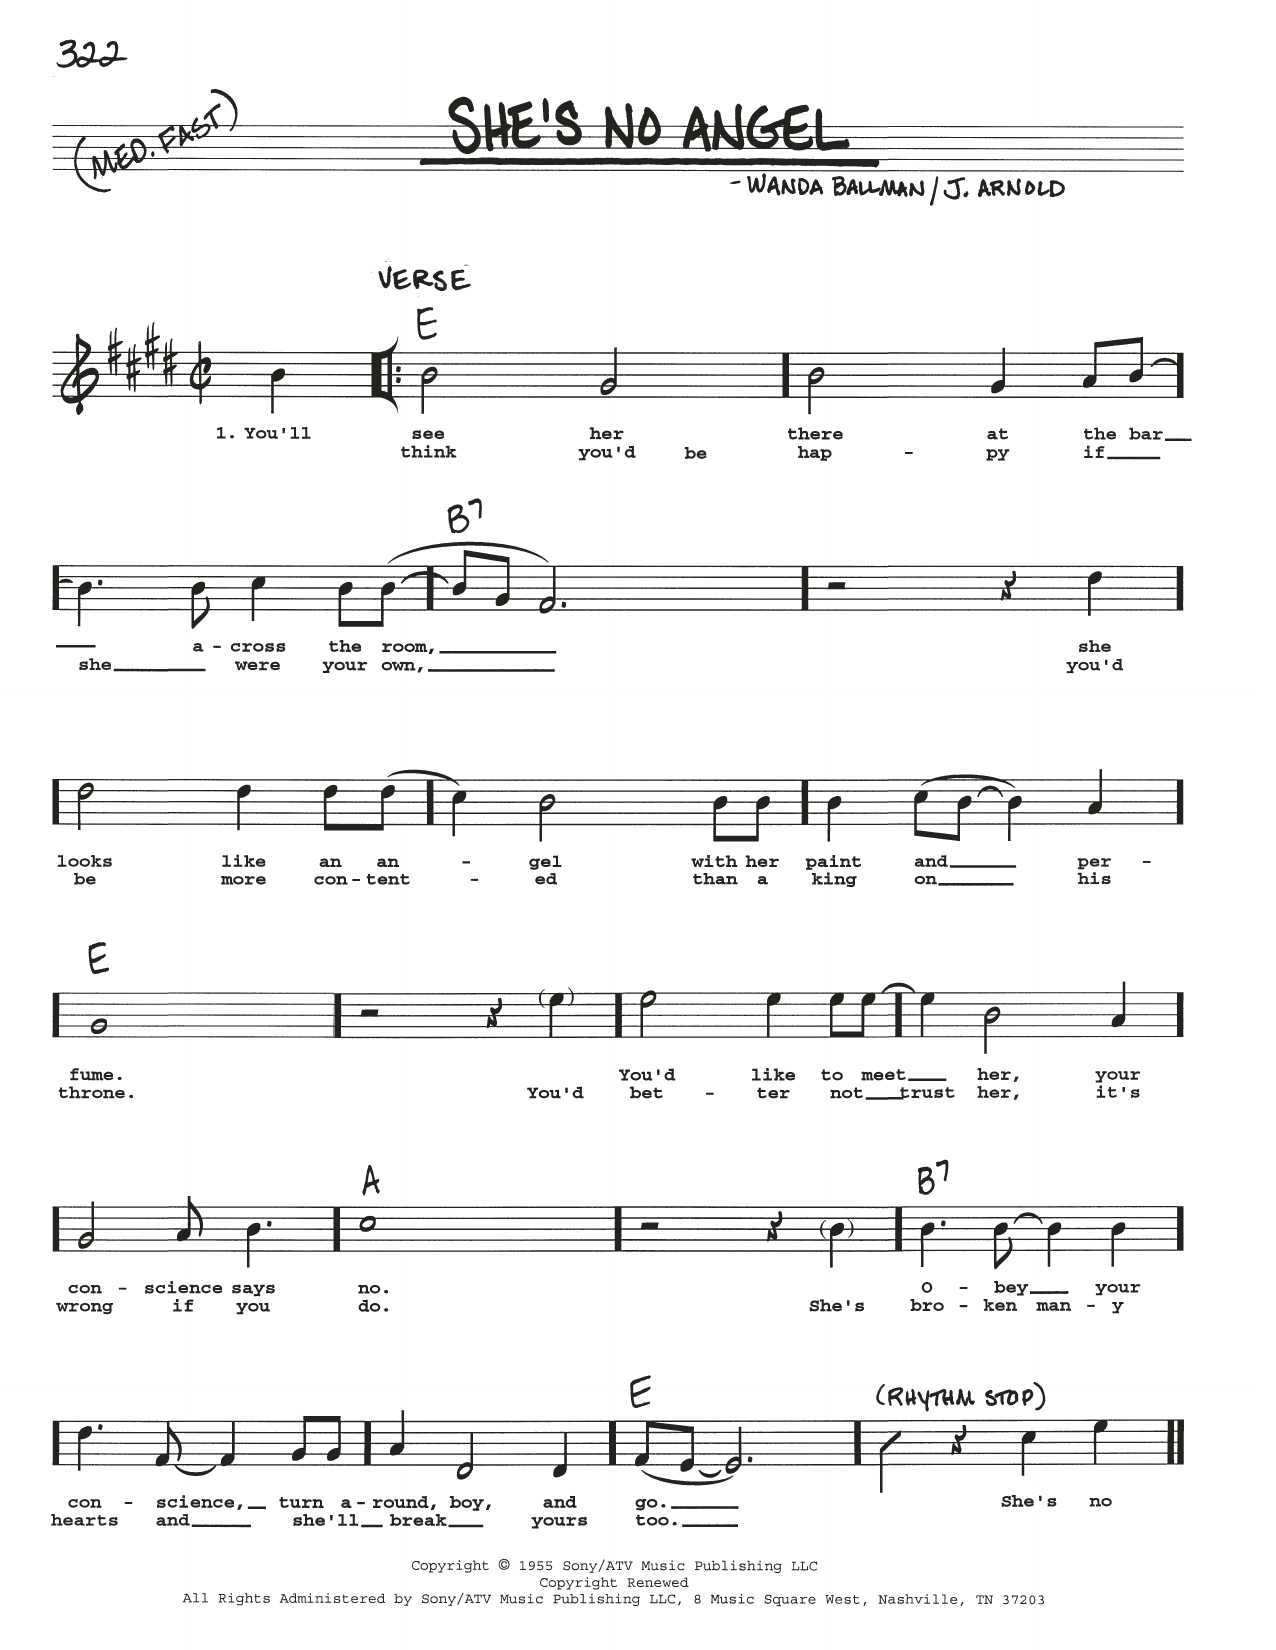 Wanda Ballman She's No Angel Sheet Music Notes & Chords for Real Book – Melody, Lyrics & Chords - Download or Print PDF